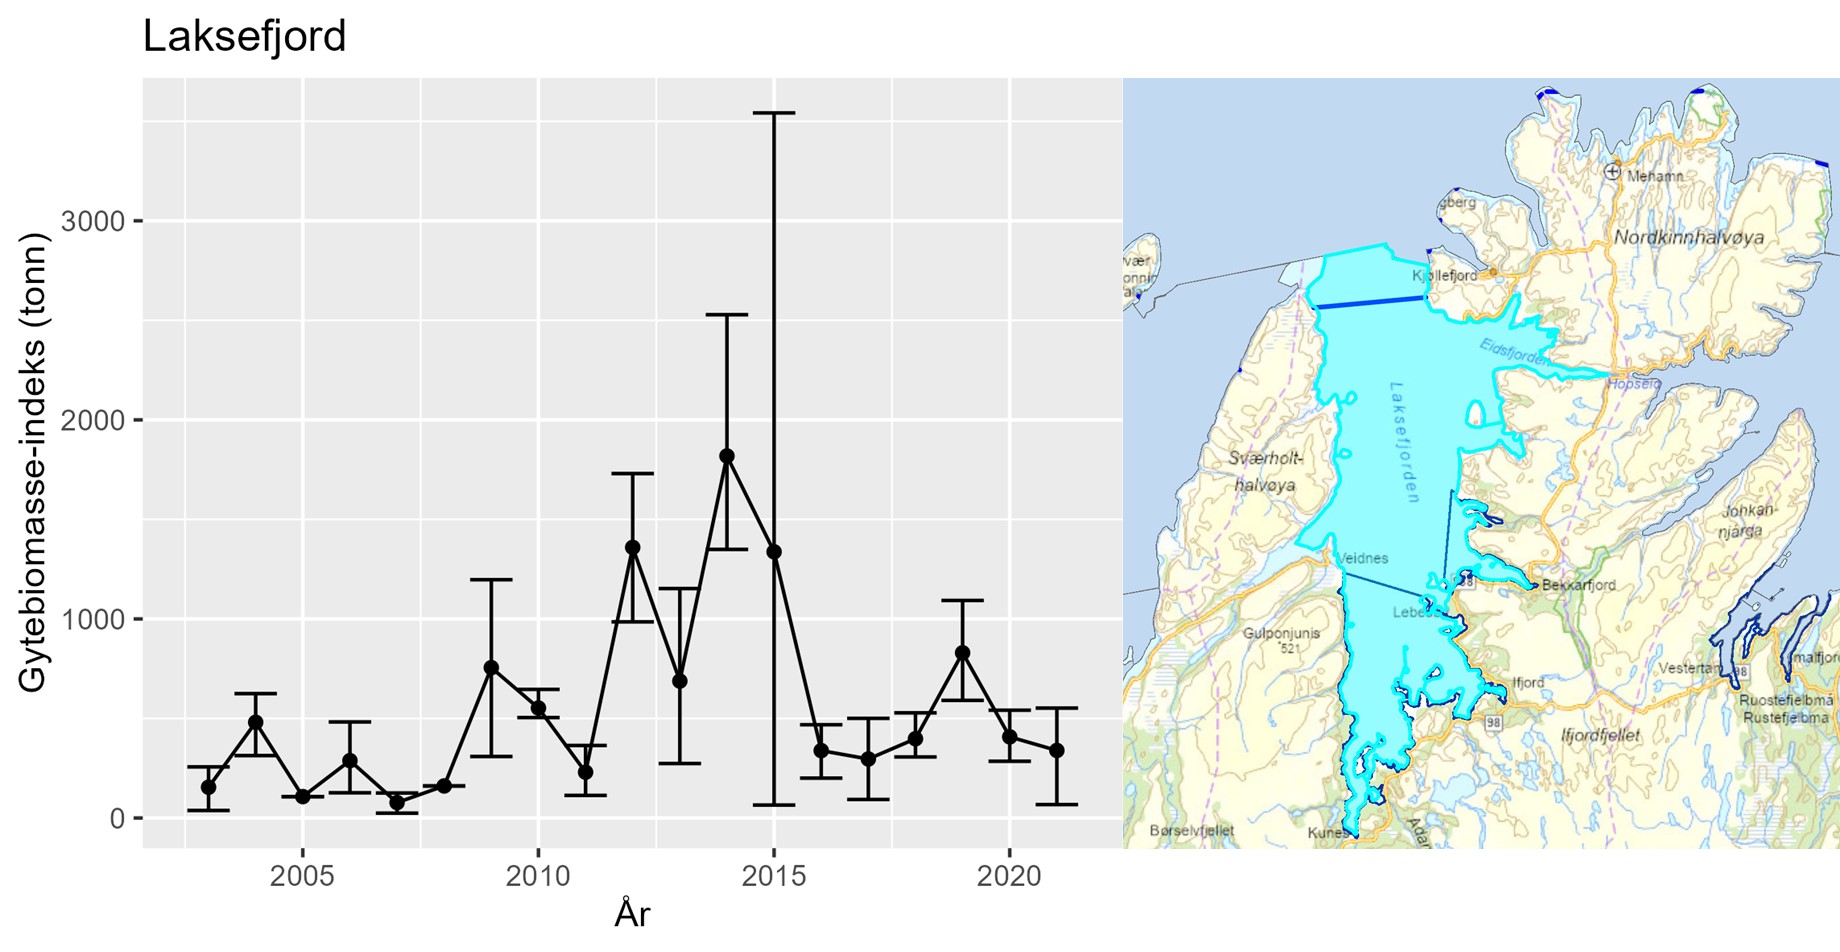 Figur 7 : Bunntrålindeks for gytebiomasse i stratum Laksefjord fra Havforskningsinstituttets årlige Kysttokt (oktober-november). Data på modning mangler fra 2022 og indeksen vises derfor bare frem til 2021. Feilstablene viser 5 og 95 %-kvantilene, mens punktestimatene er middelverdi over 500 bootstrap-iterasjoner i estimeringsprosessen. Kartet til høyre viser området som inngår i stratum Laksefjord.